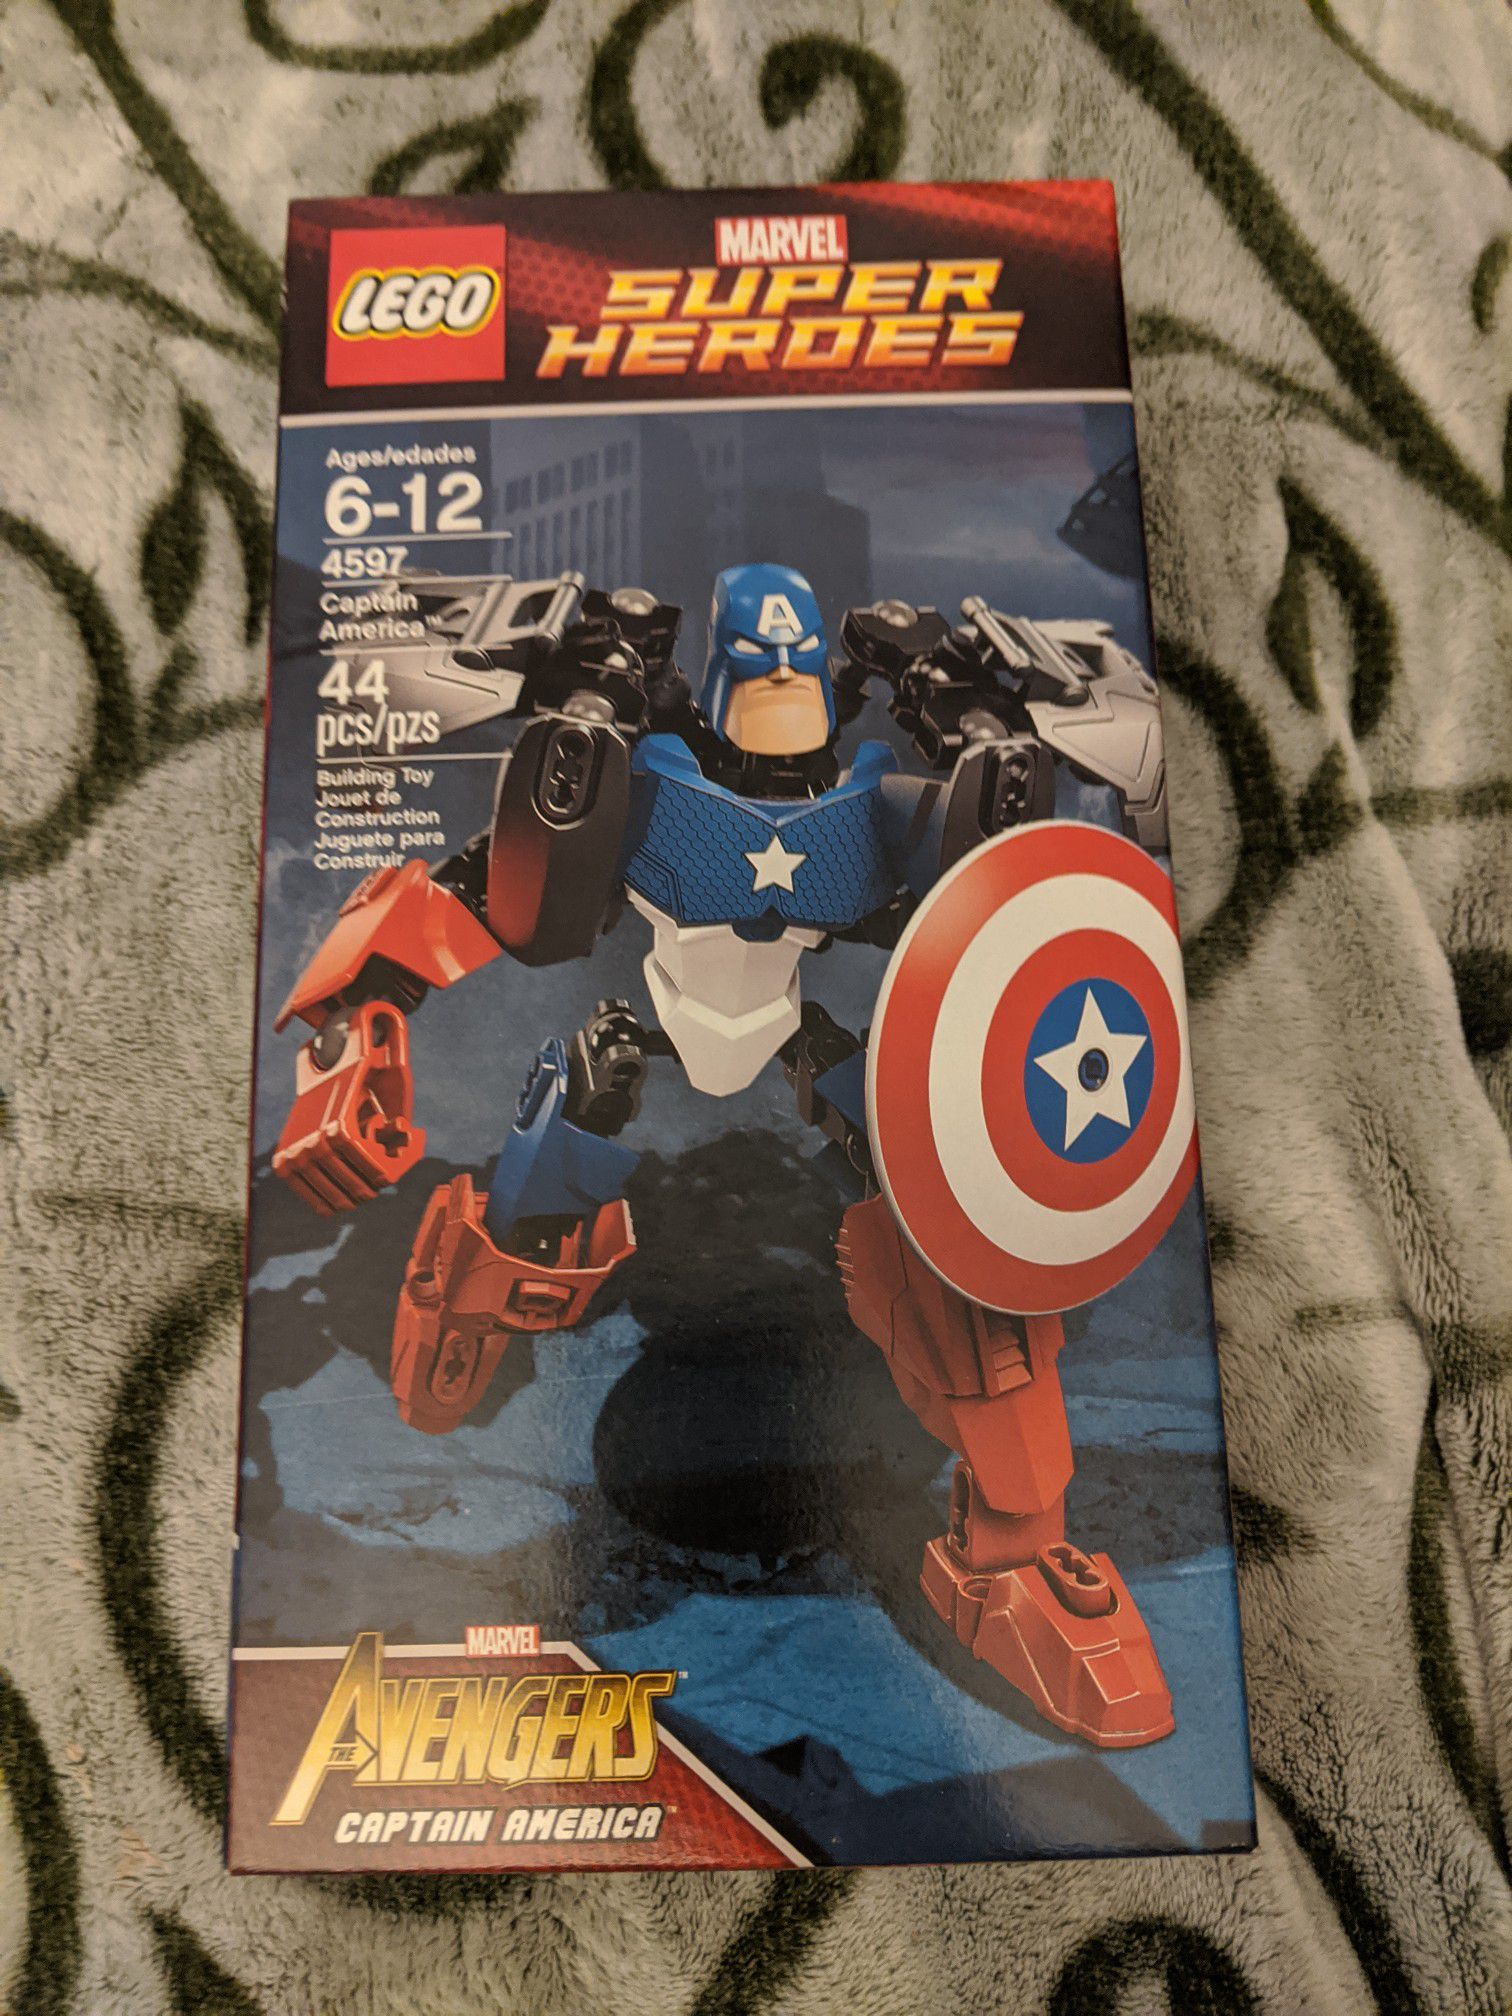 New Lego Marvel Super Heroes Avengers Captain America Set 4597